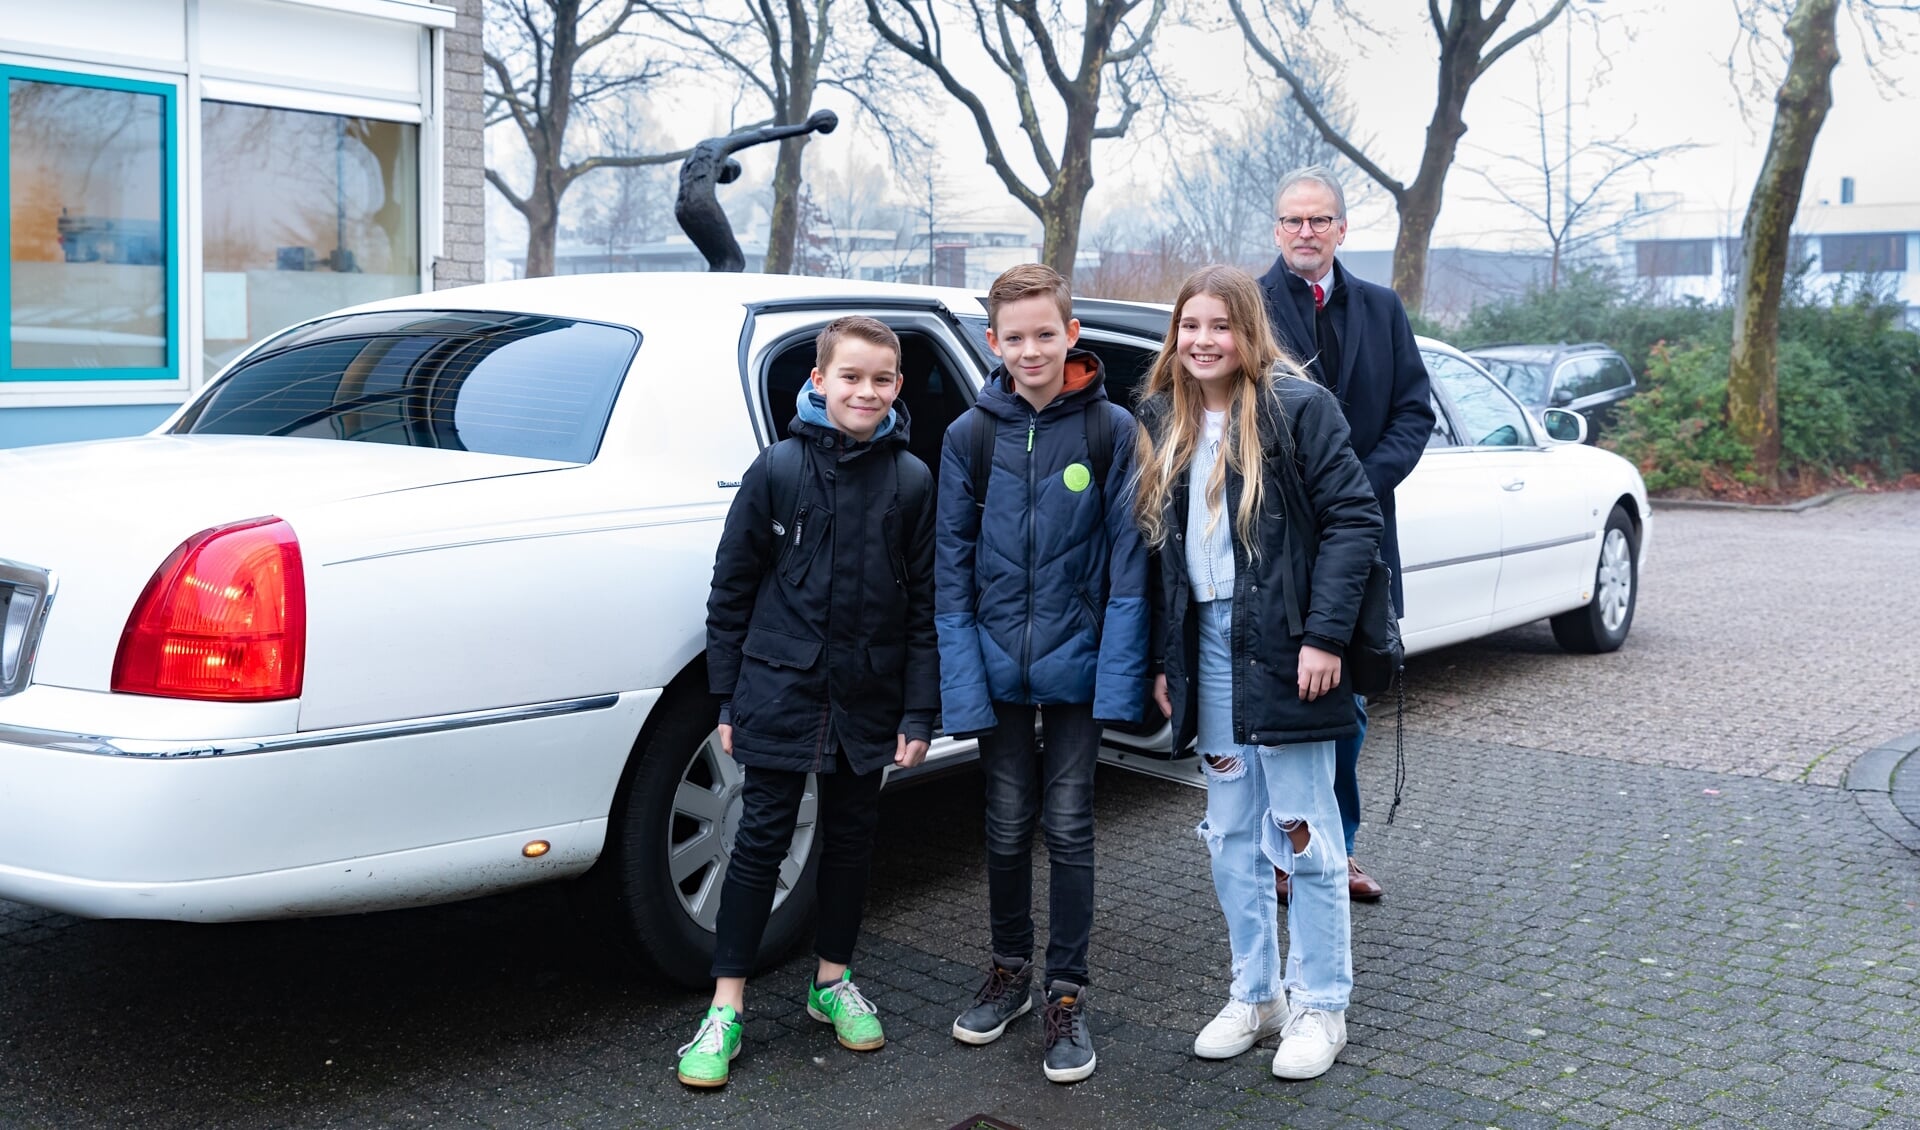 • Ruben, Joël en Guusje uit groep 8 van christelijk kindcentrum Prins Floris in Papendrecht werden voor de online Open Dag van de locatie vmbo/mavo opgehaald met een luxe limousine.